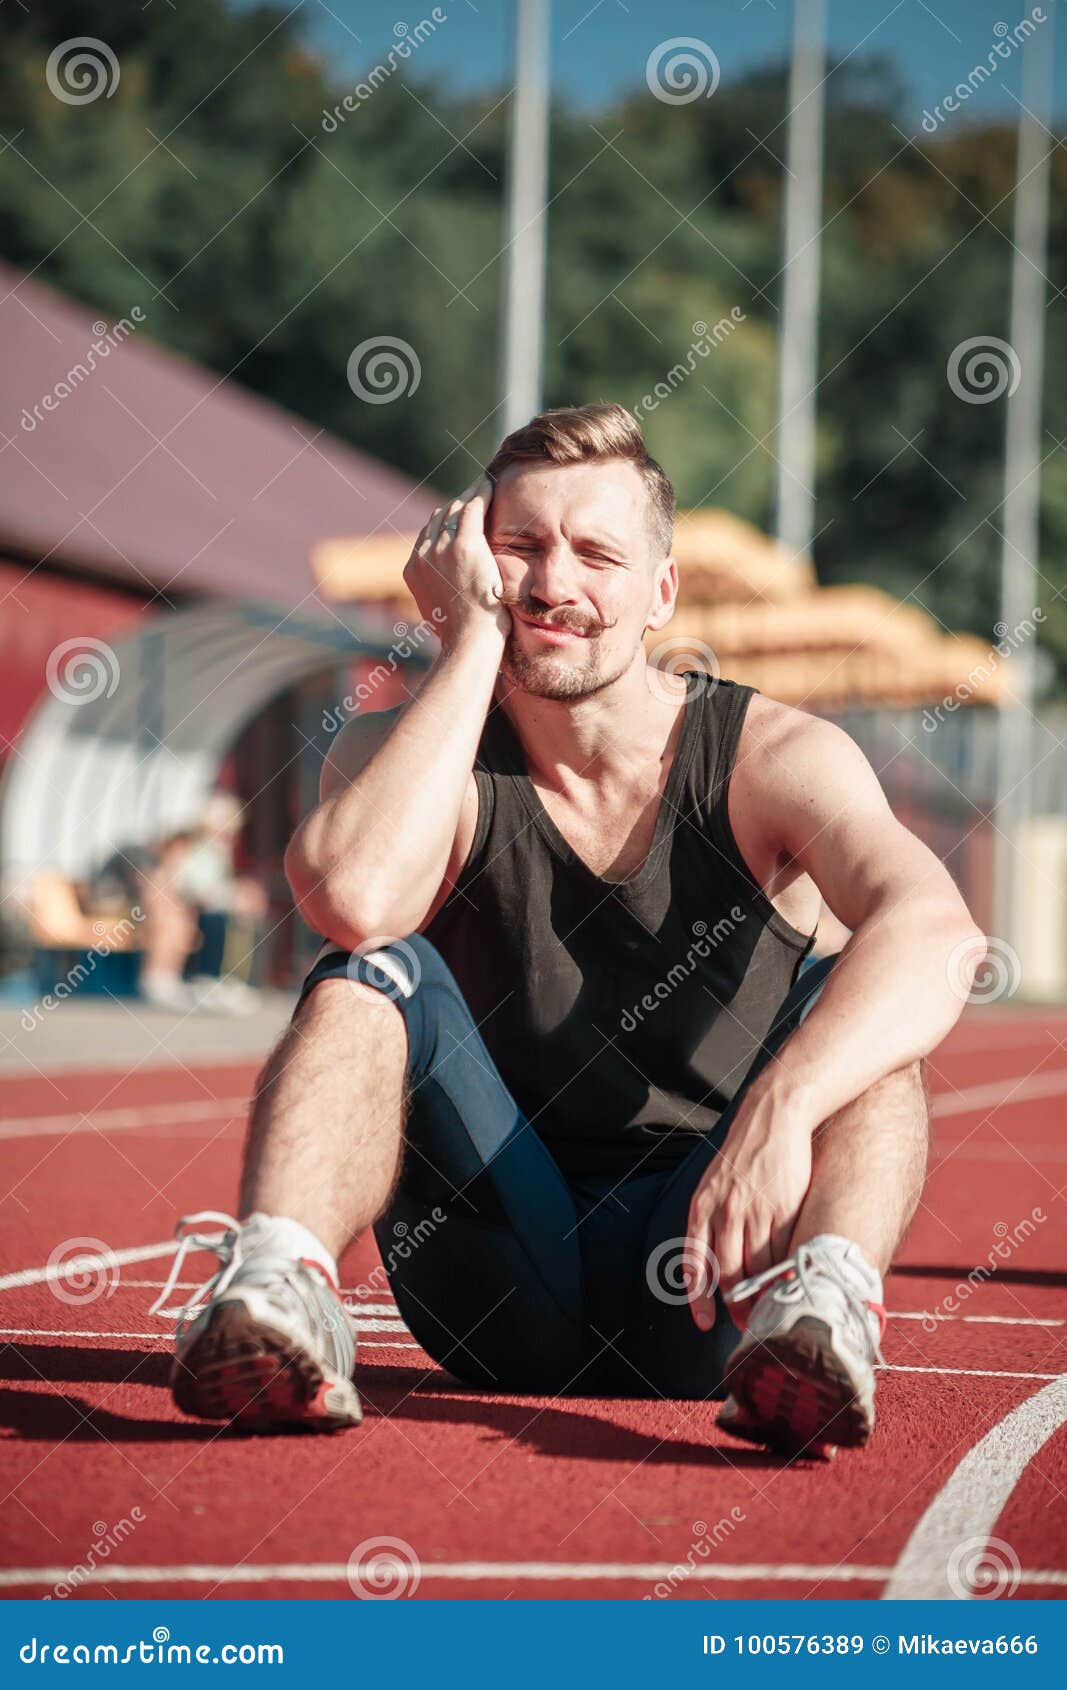 Athlete Asleep Sitting in the Stadium Stock Image - Image of emotional ...